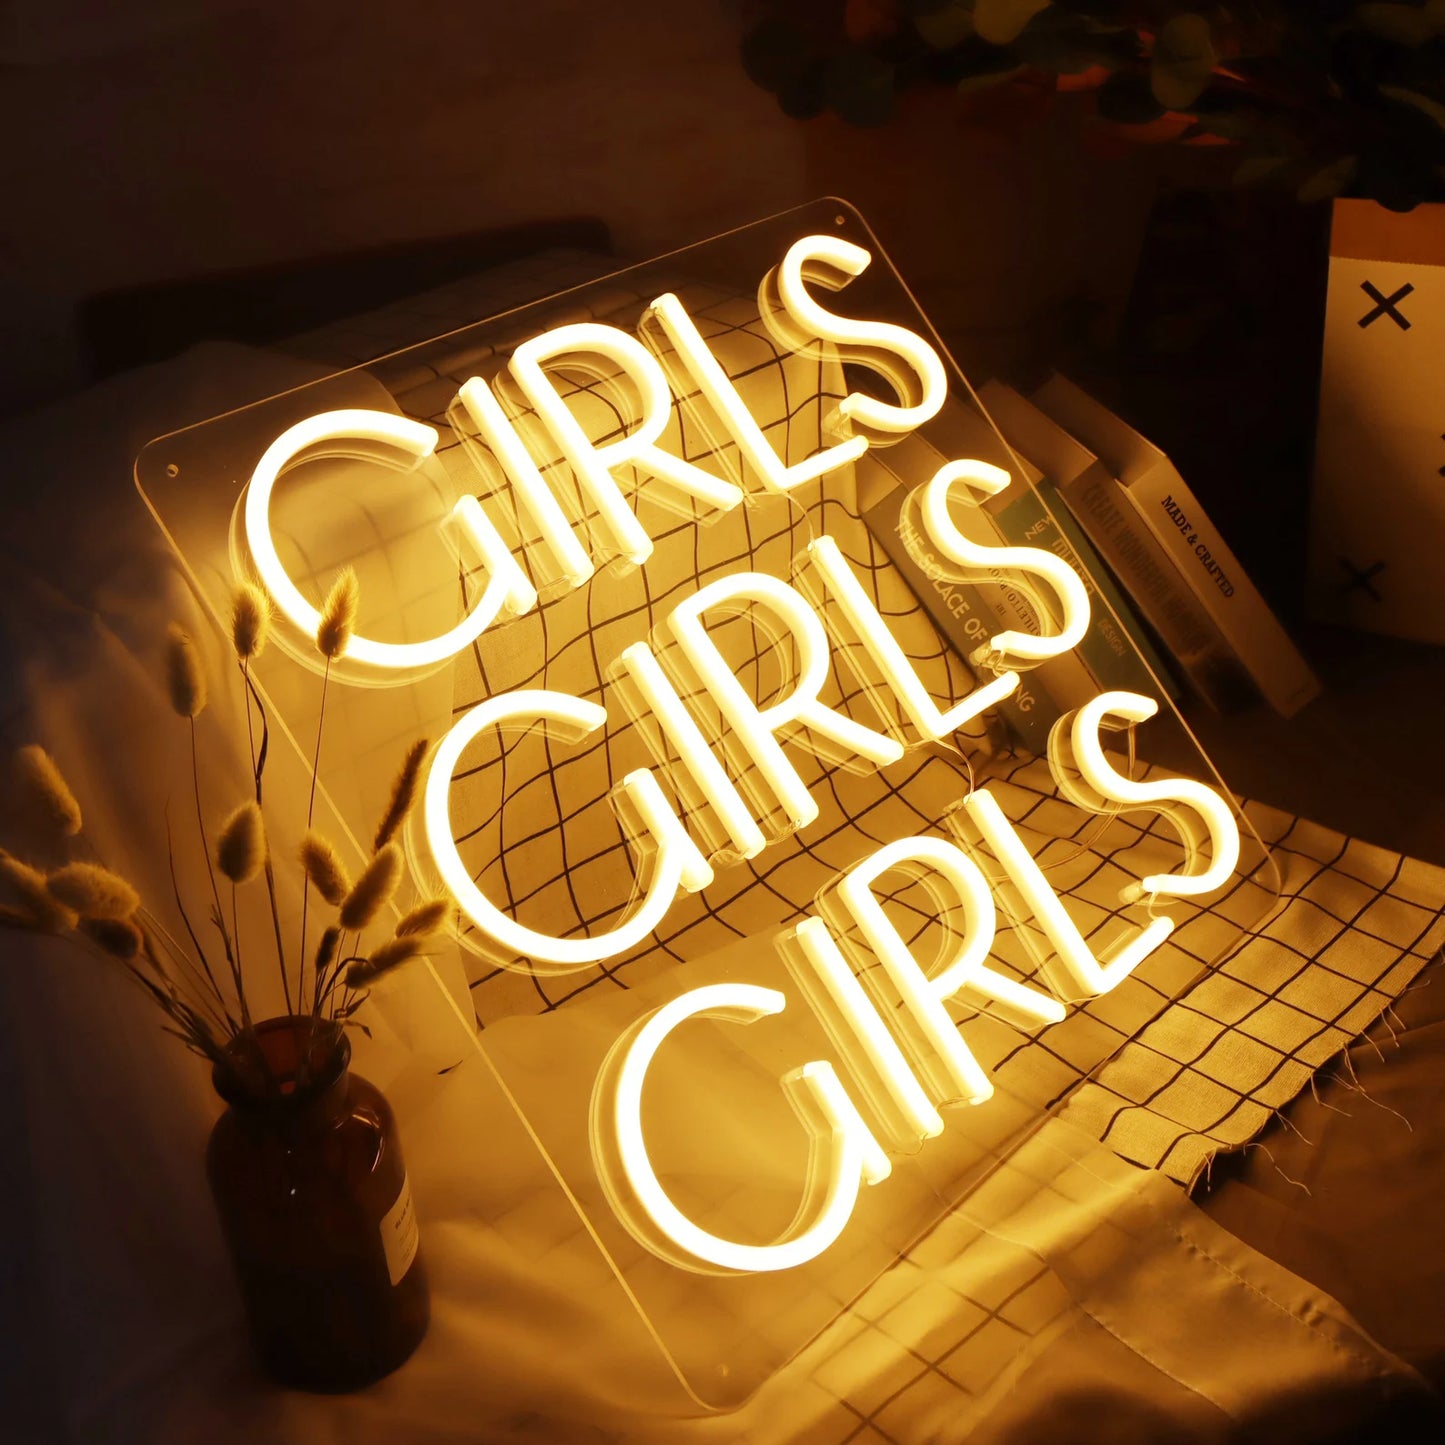 GIRLS GIRLS GIRLS LED Neon Sign